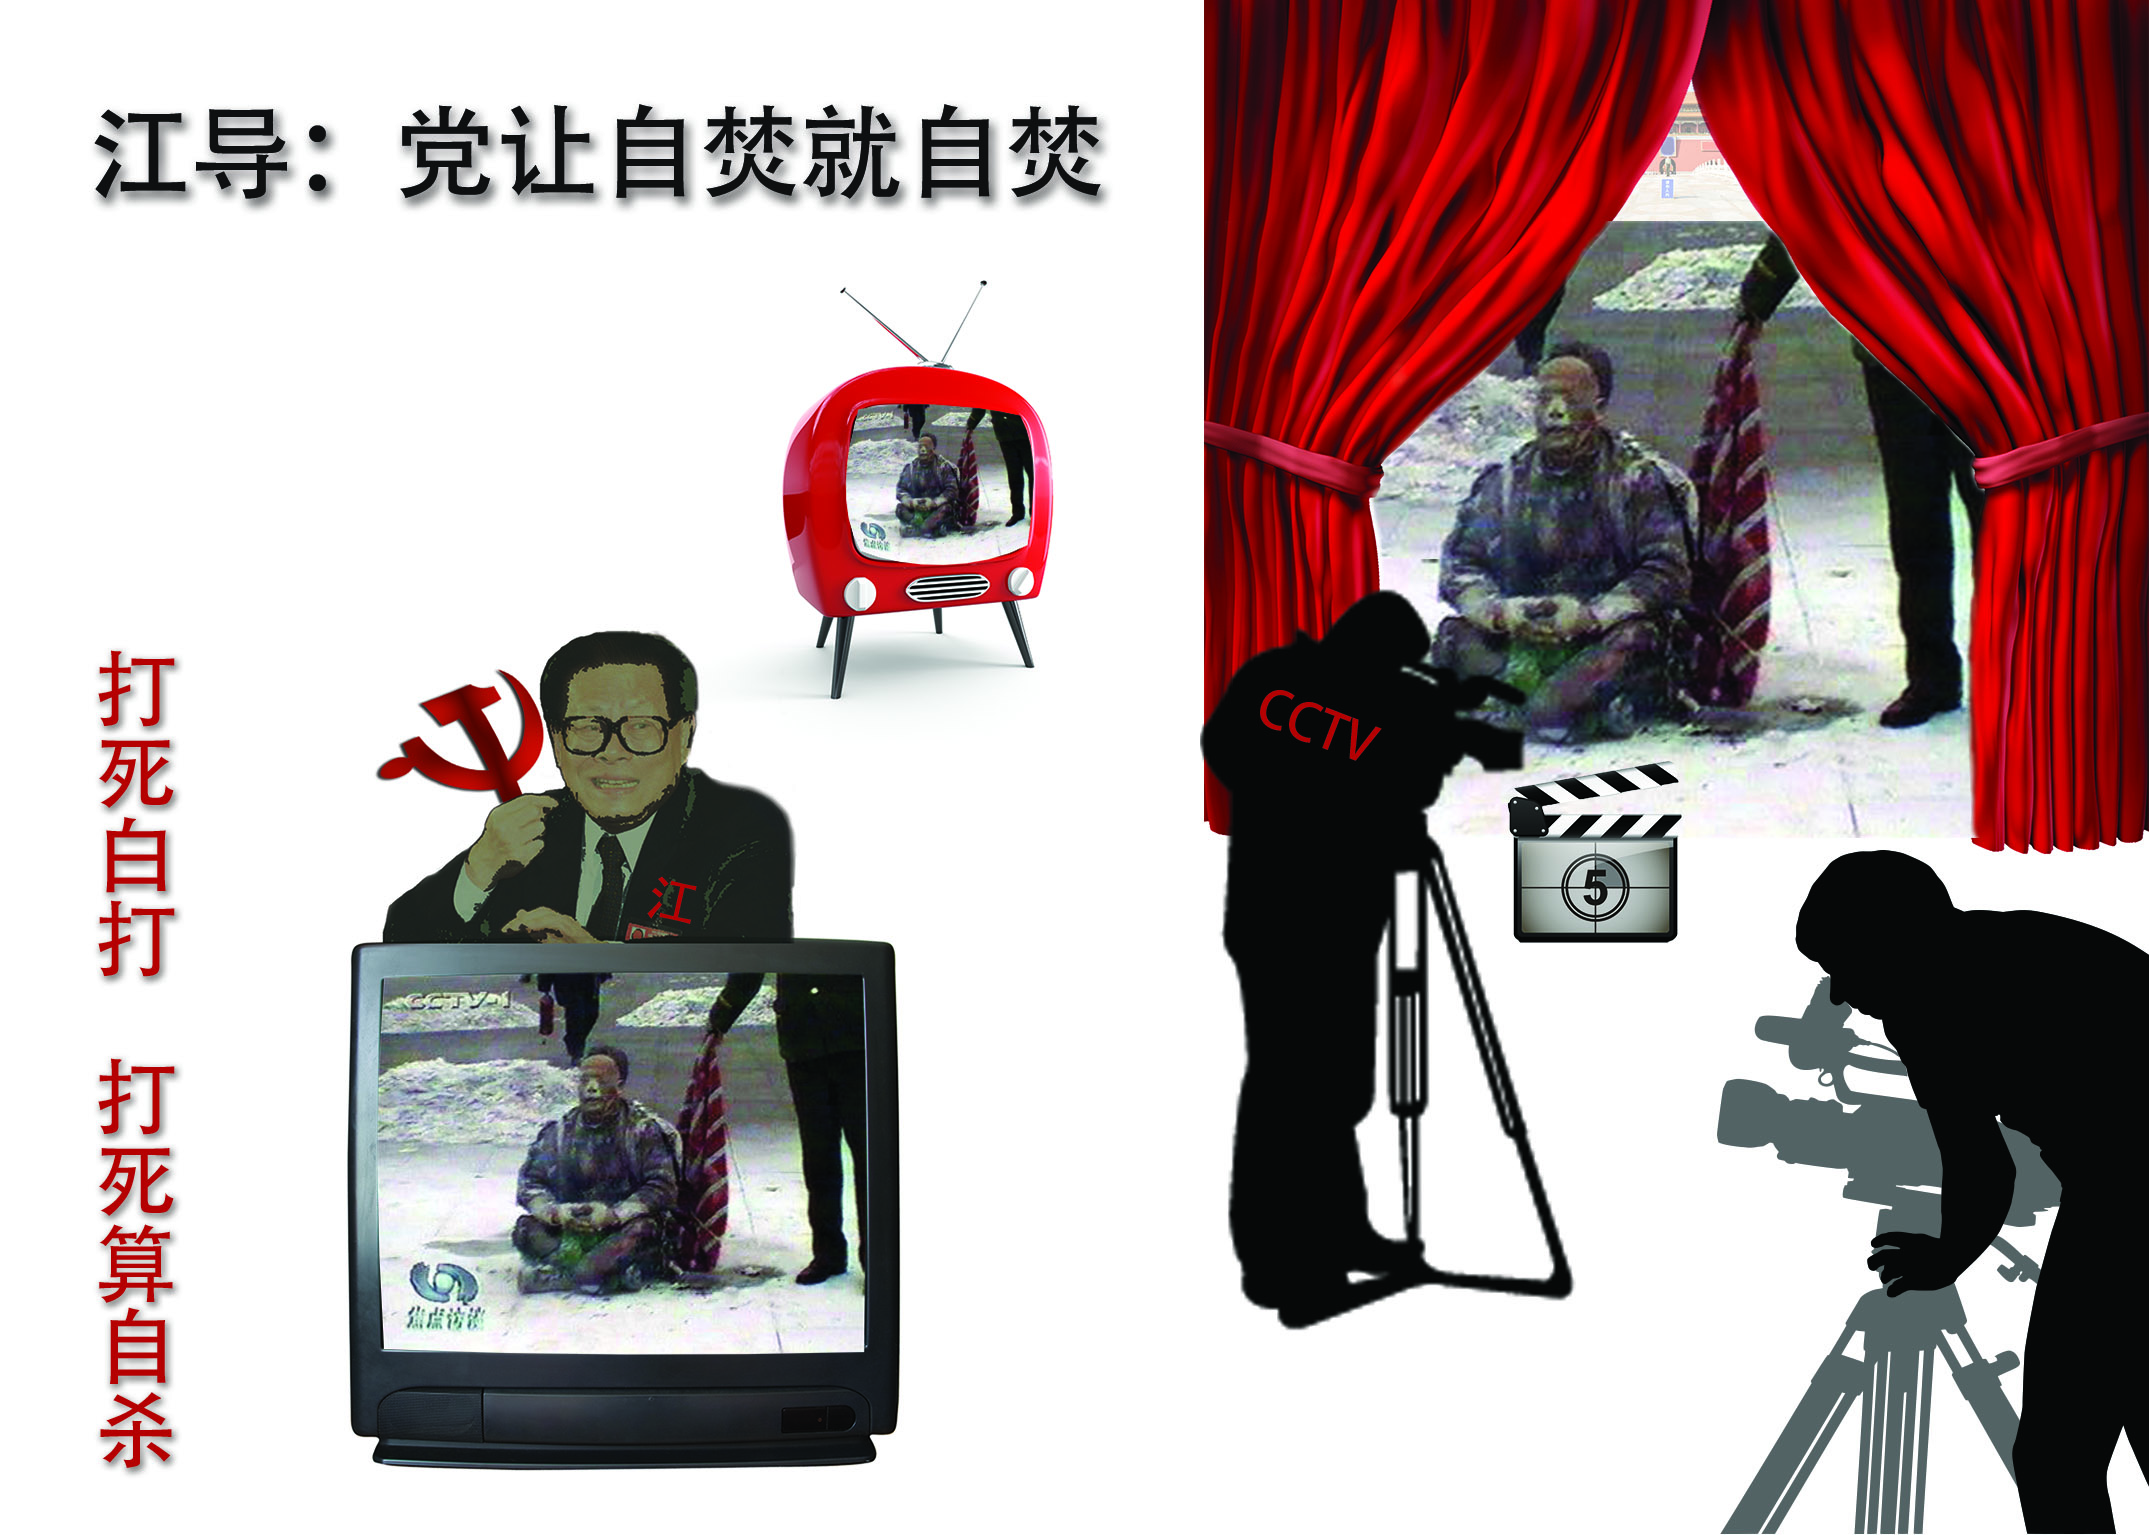 Image for article Les reporters de CCTV doivent avoir été informés au préalable de la mise en scène de l'incident des auto-immolations